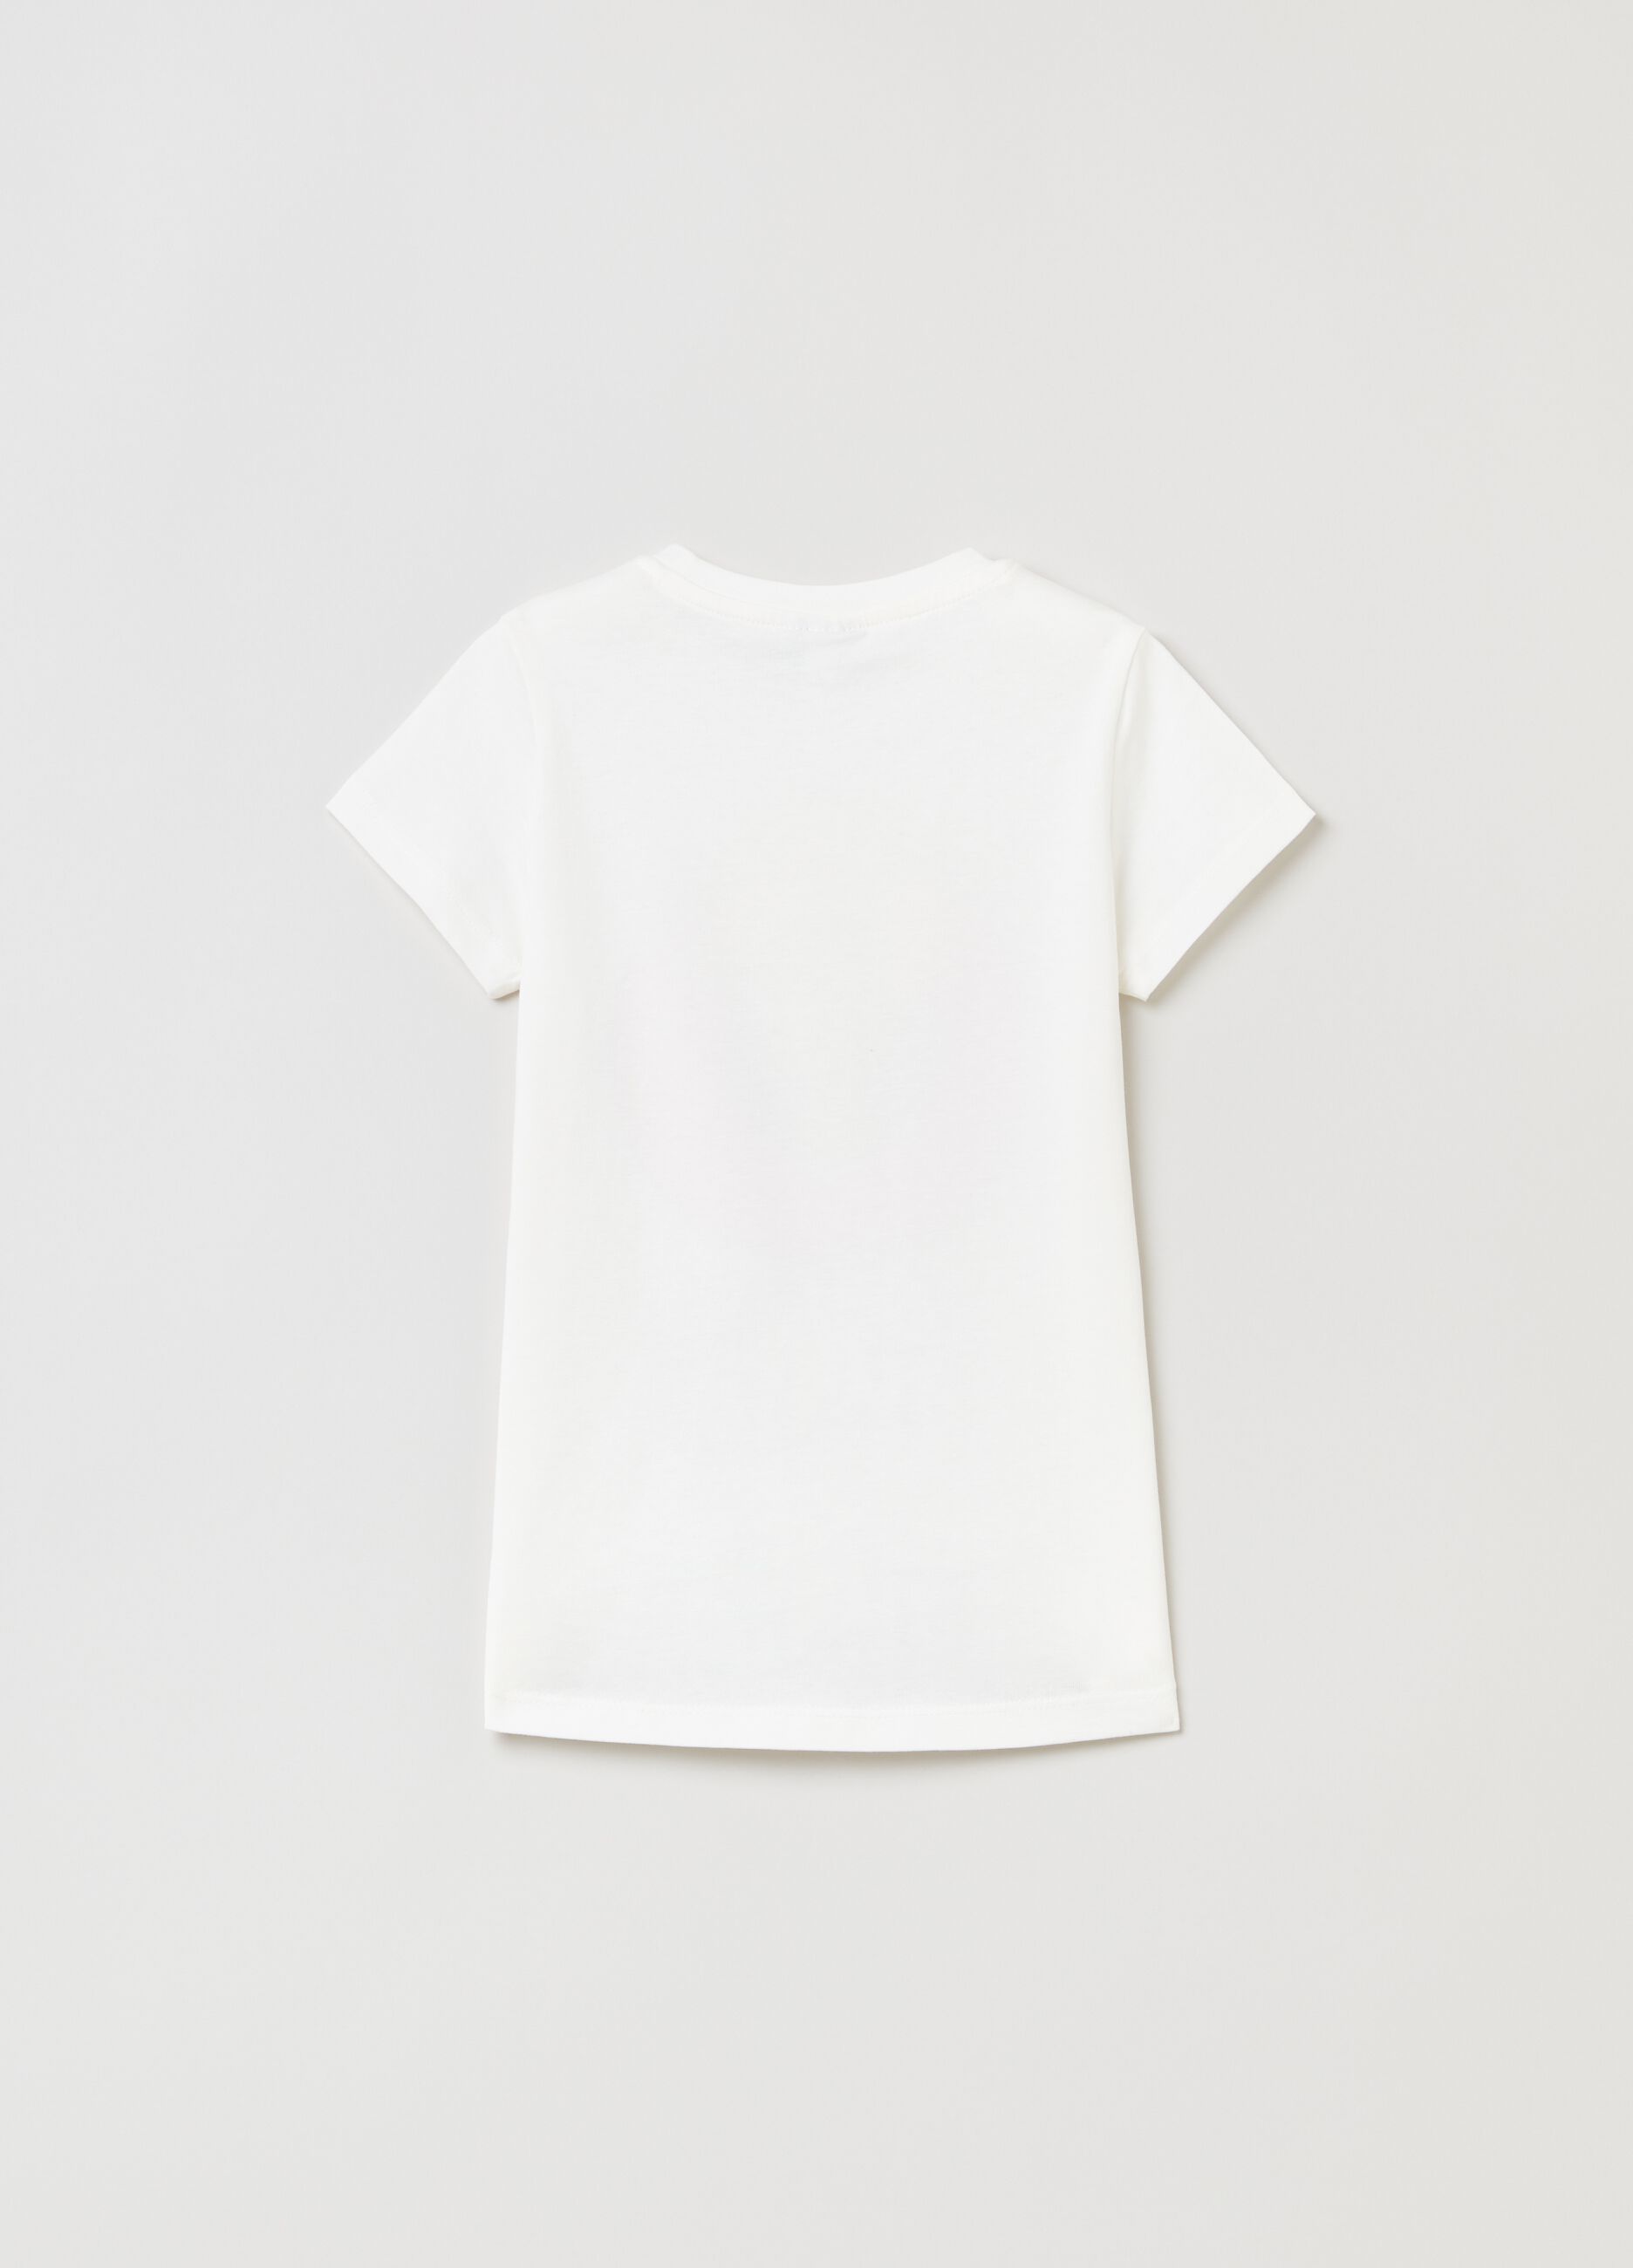 Cotton T-shirt with Tweetie Pie print